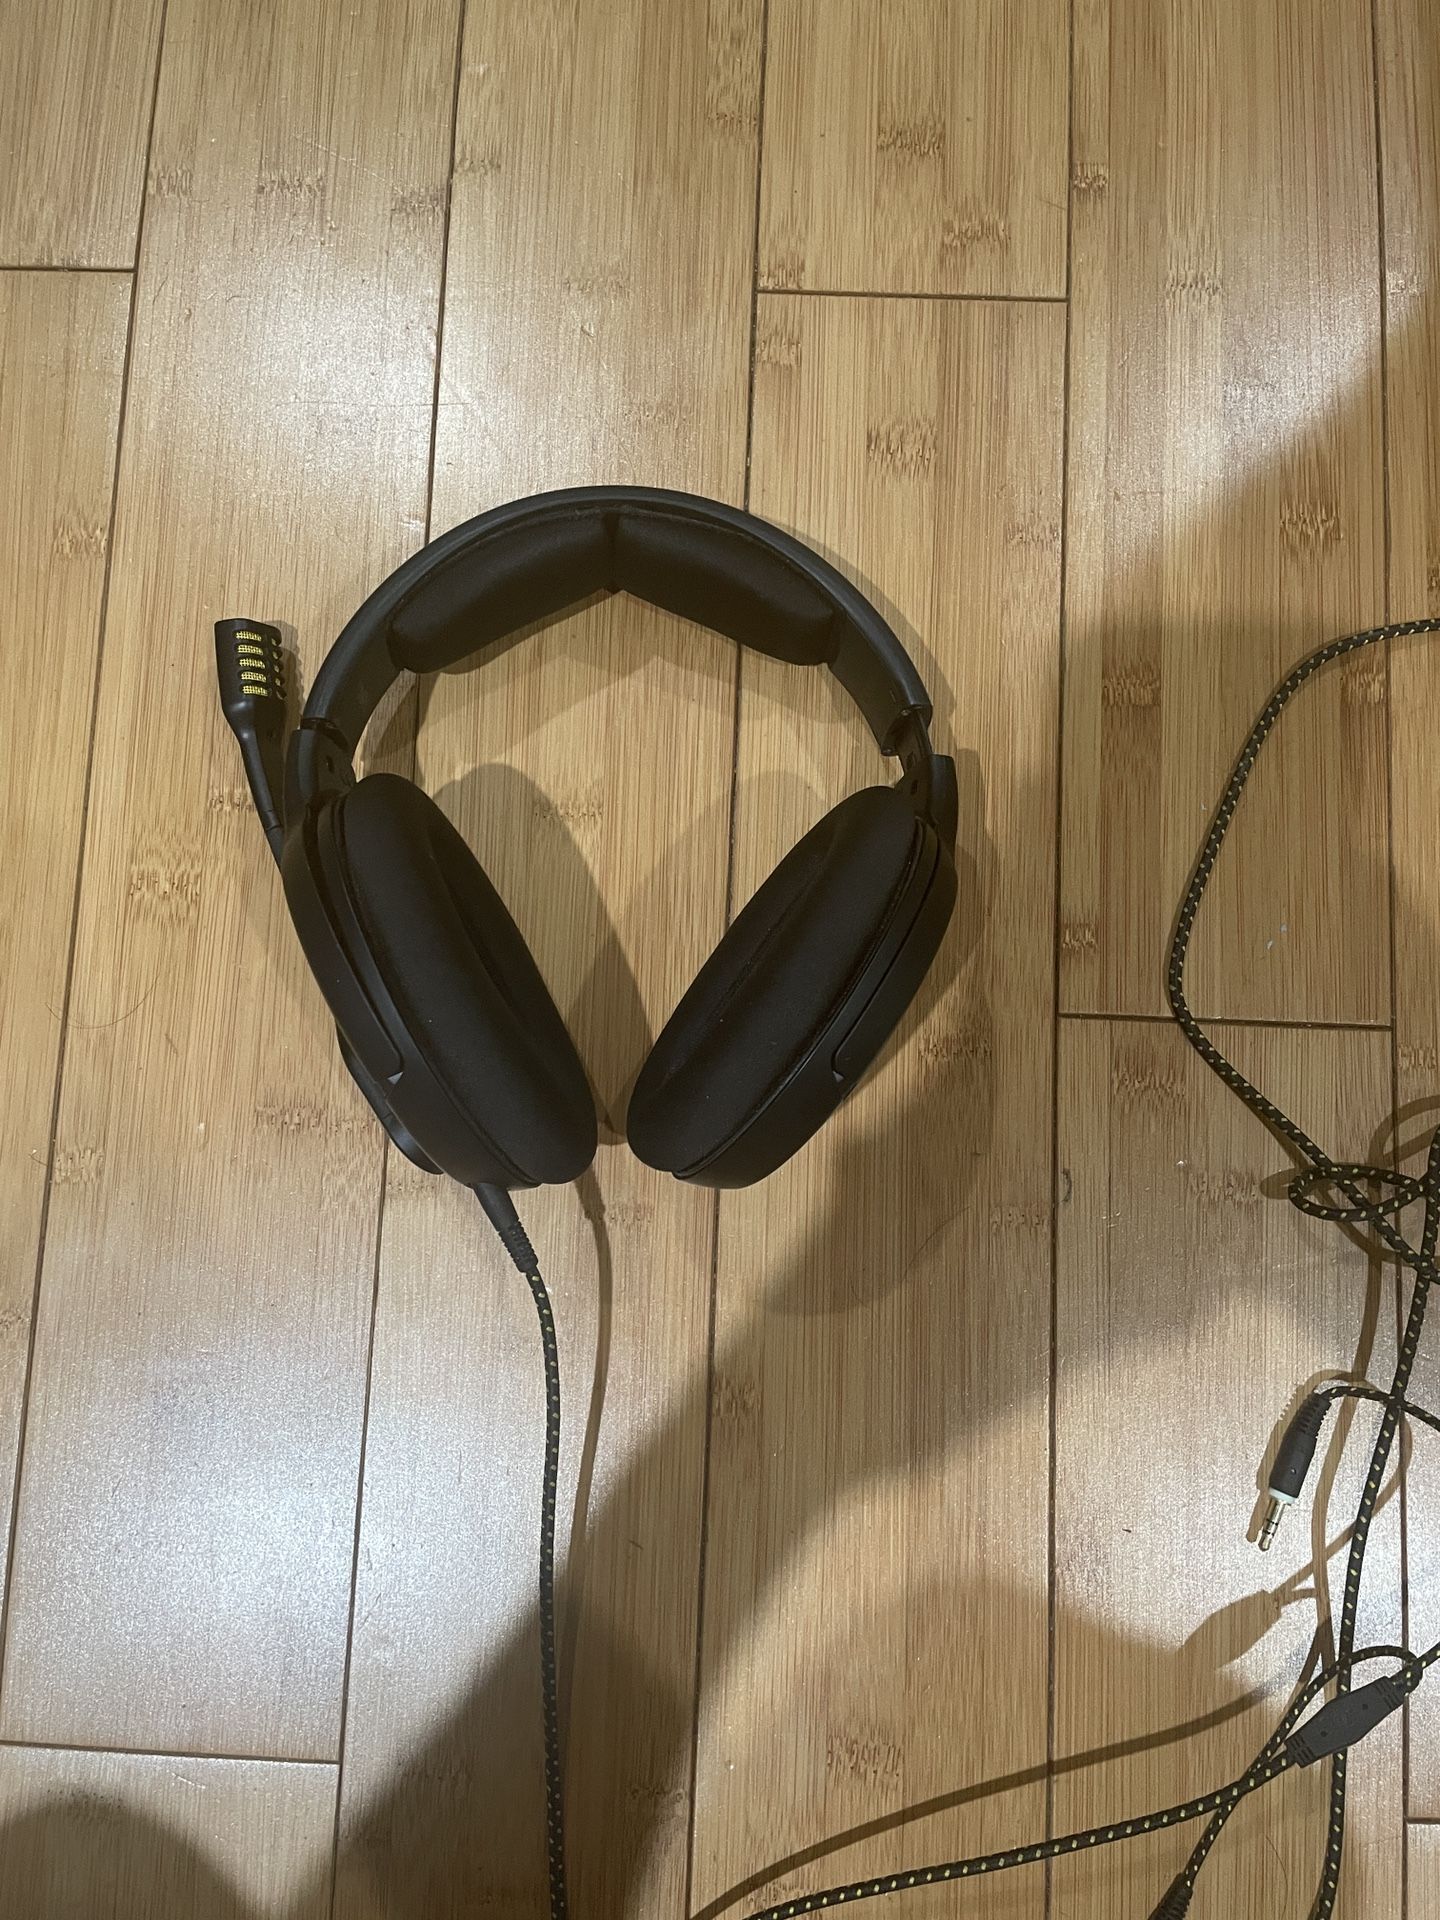 Sennheiser PC38x Headphones/Gaming Headphones